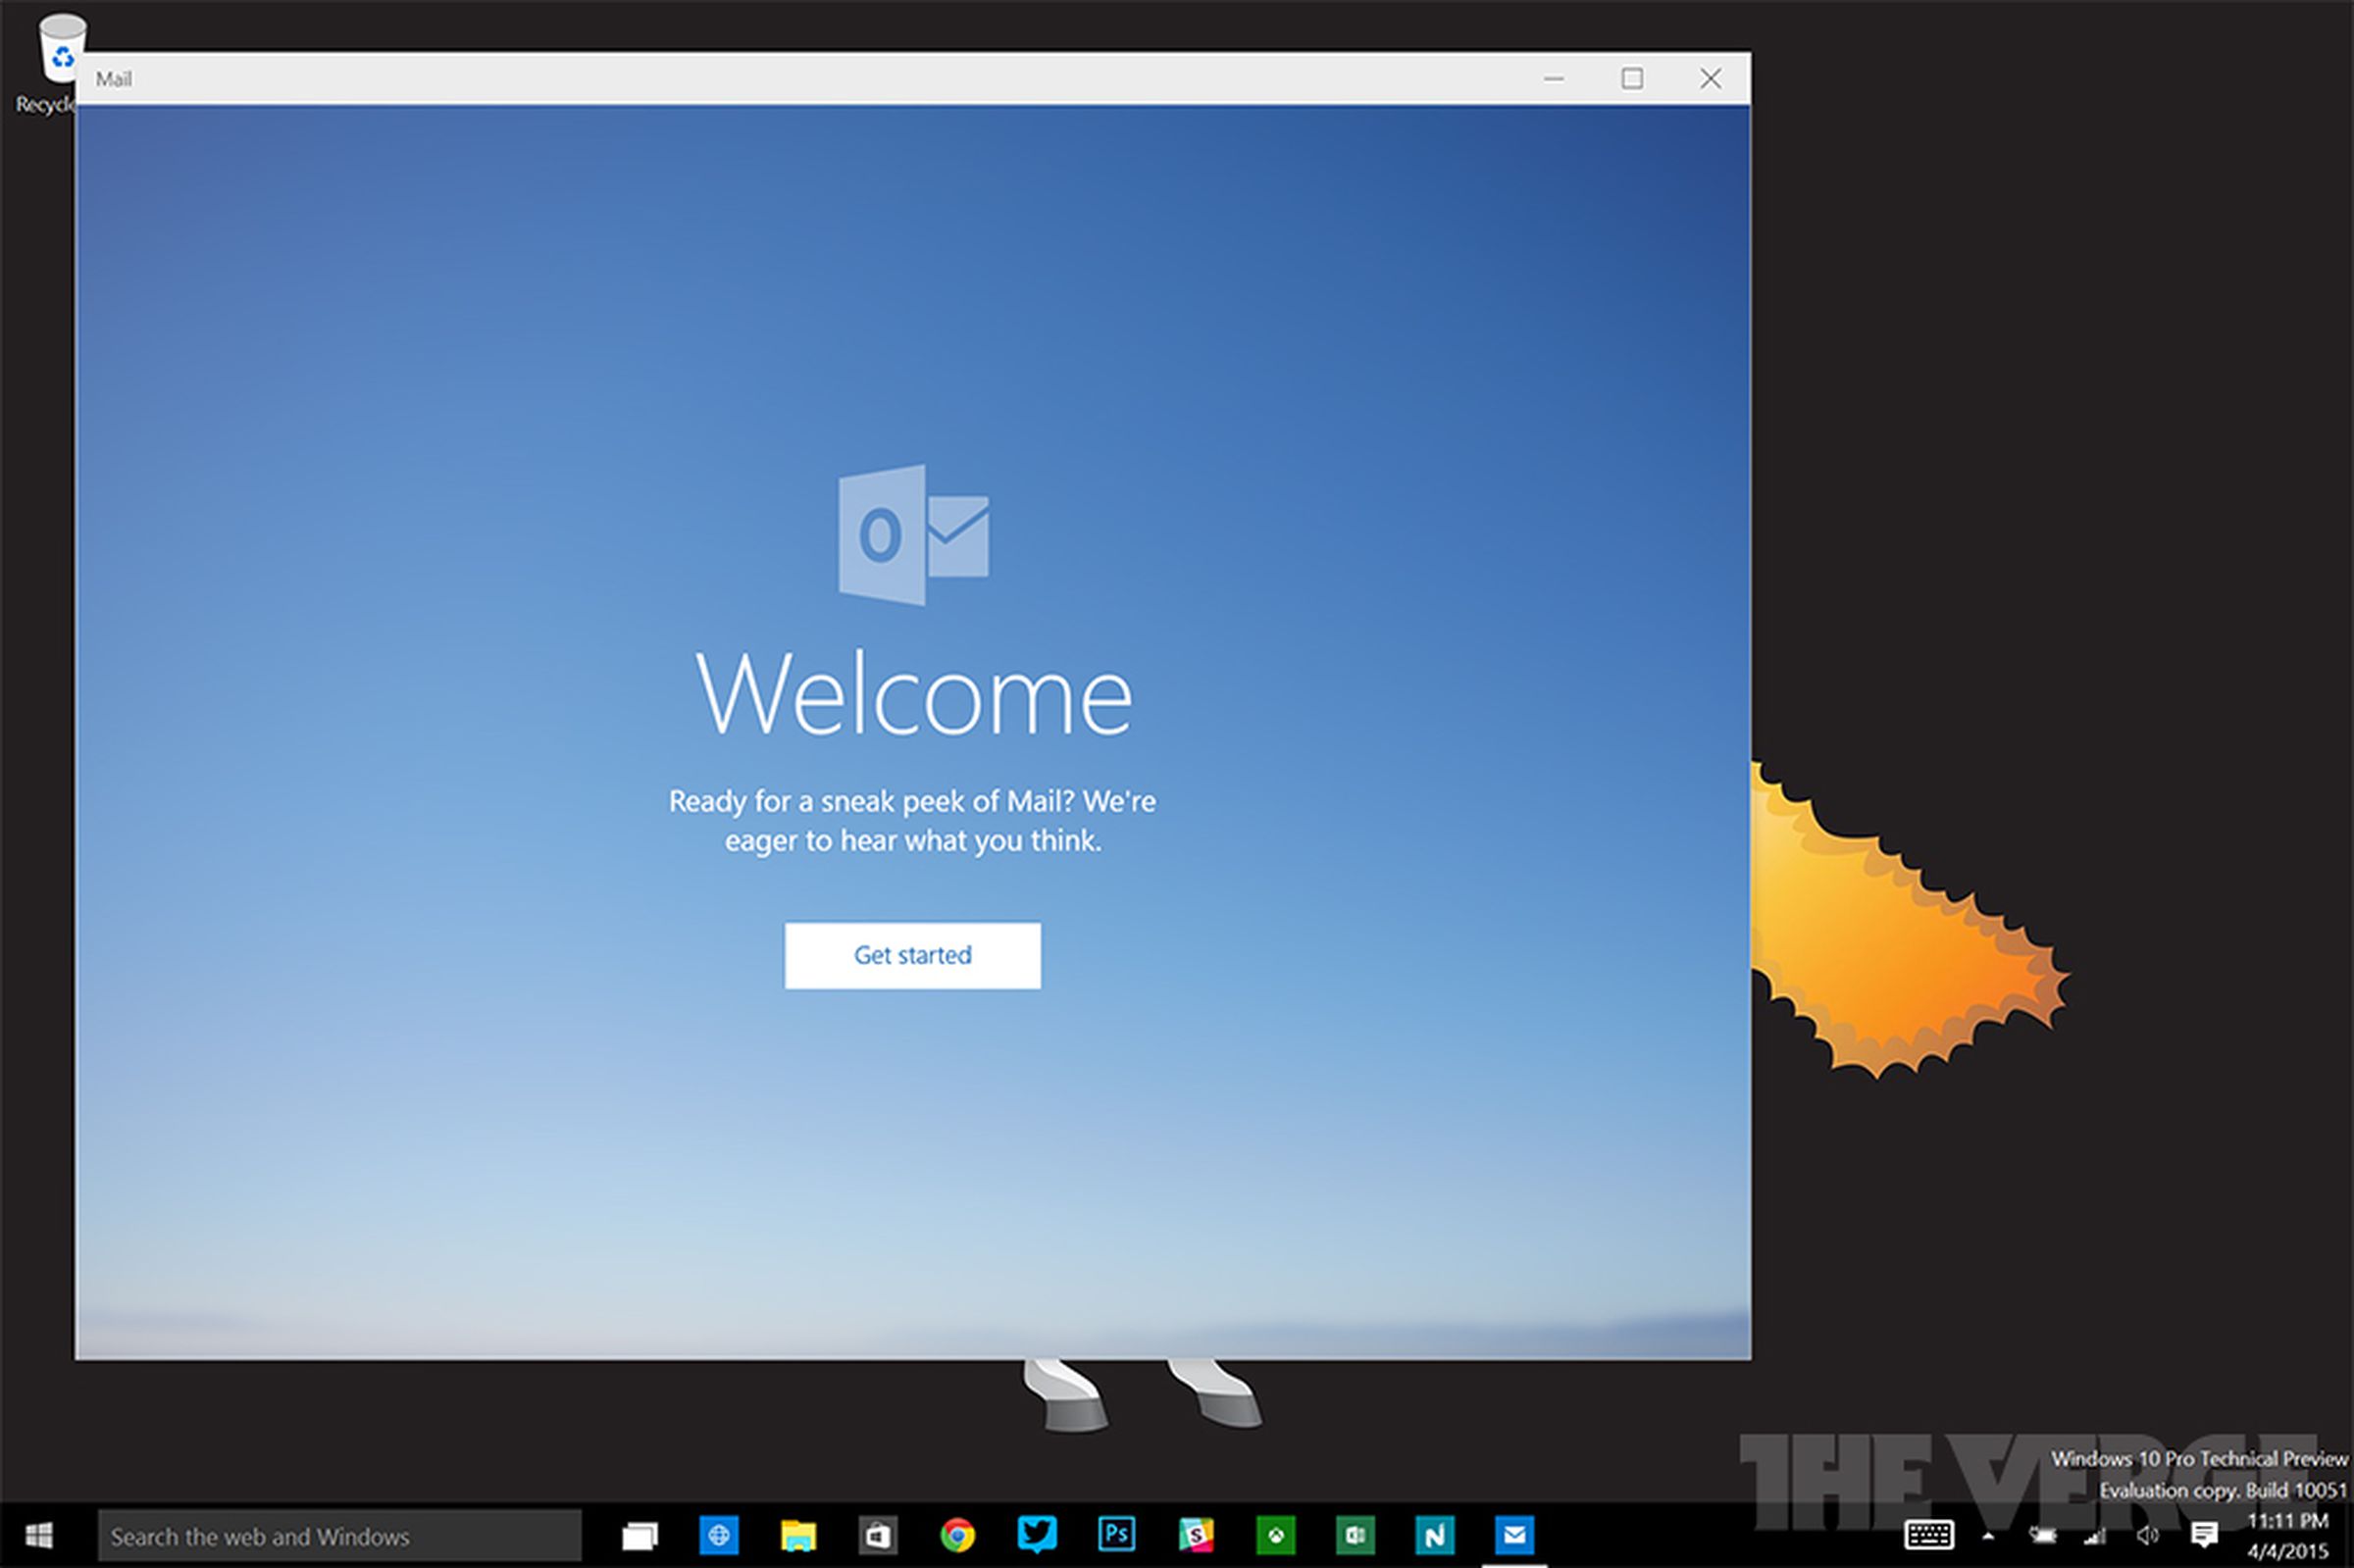 Windows 10 Mail and Calendar apps screenshots